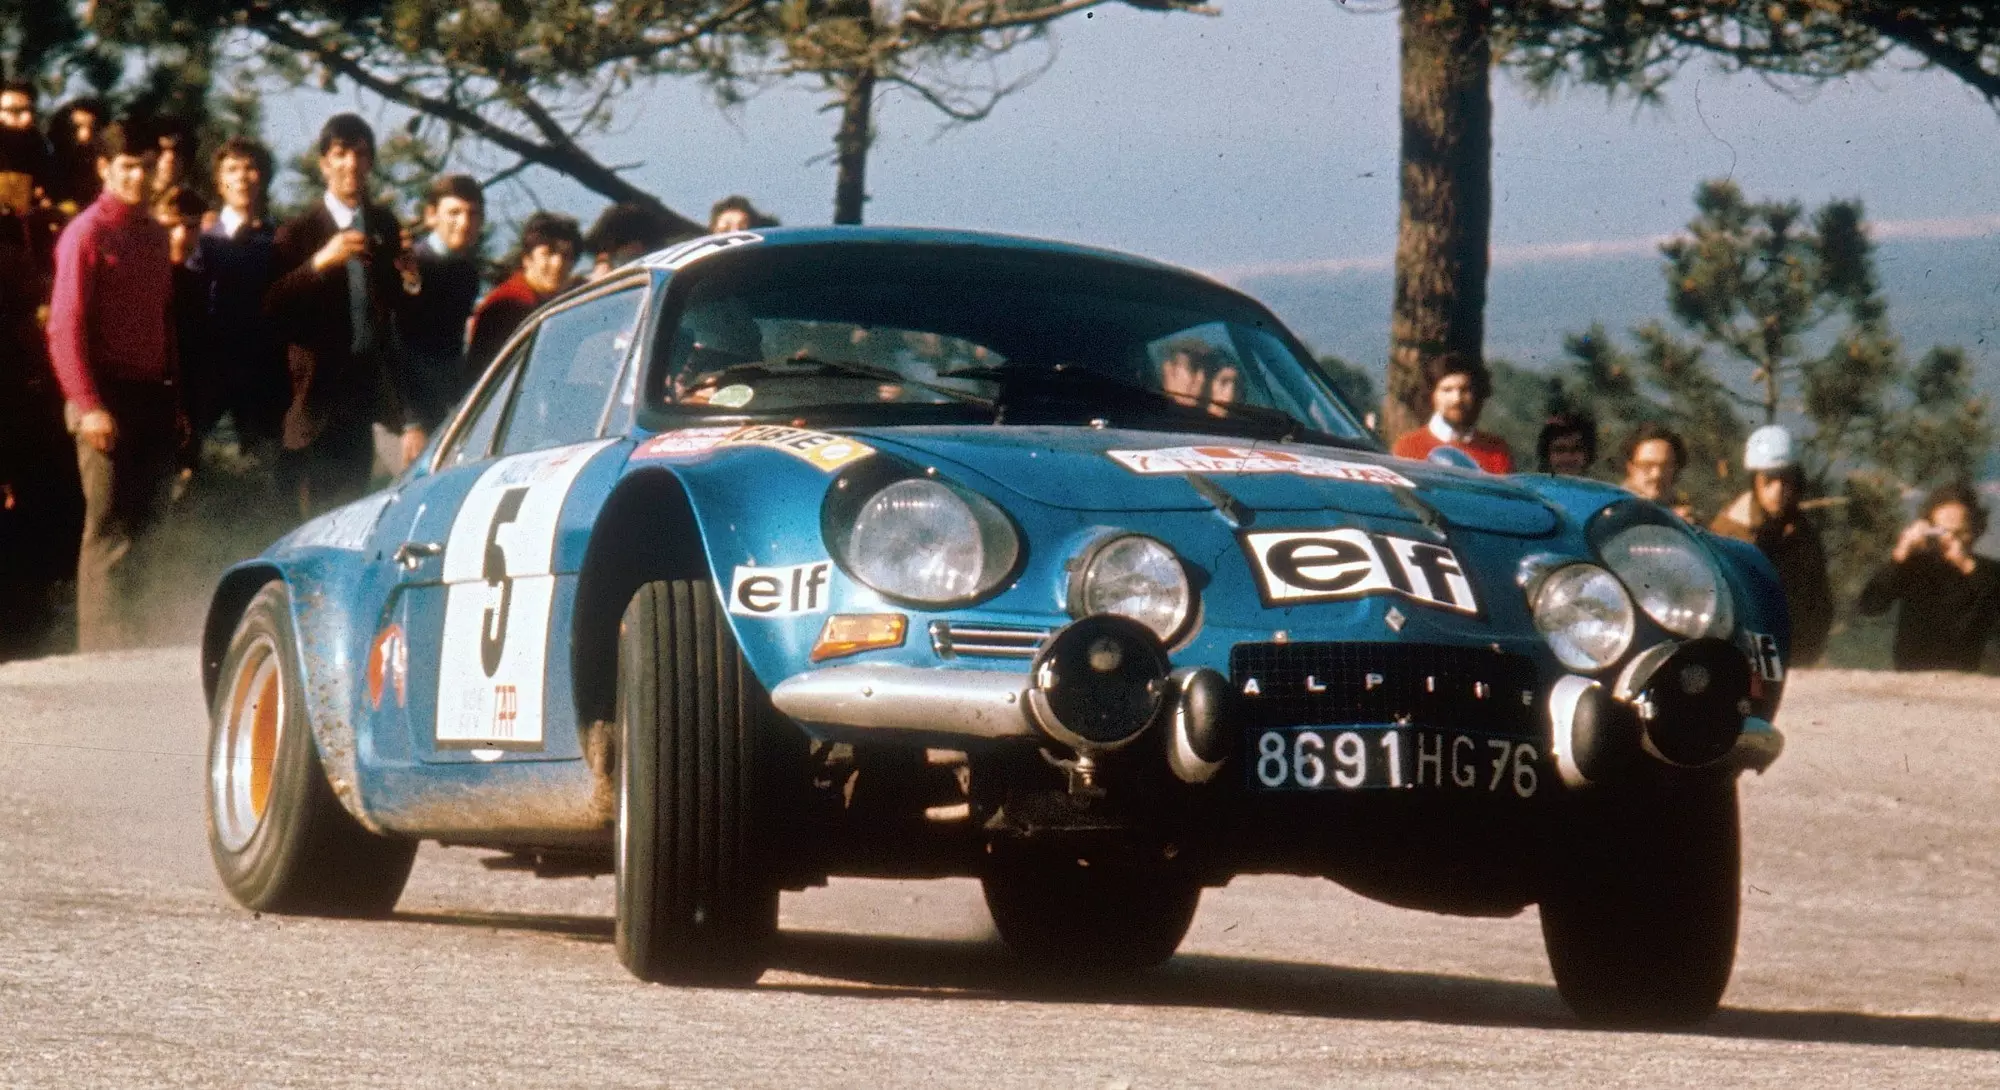 1973 – Alpine A110 1800 S – Jean-Luc Thérier